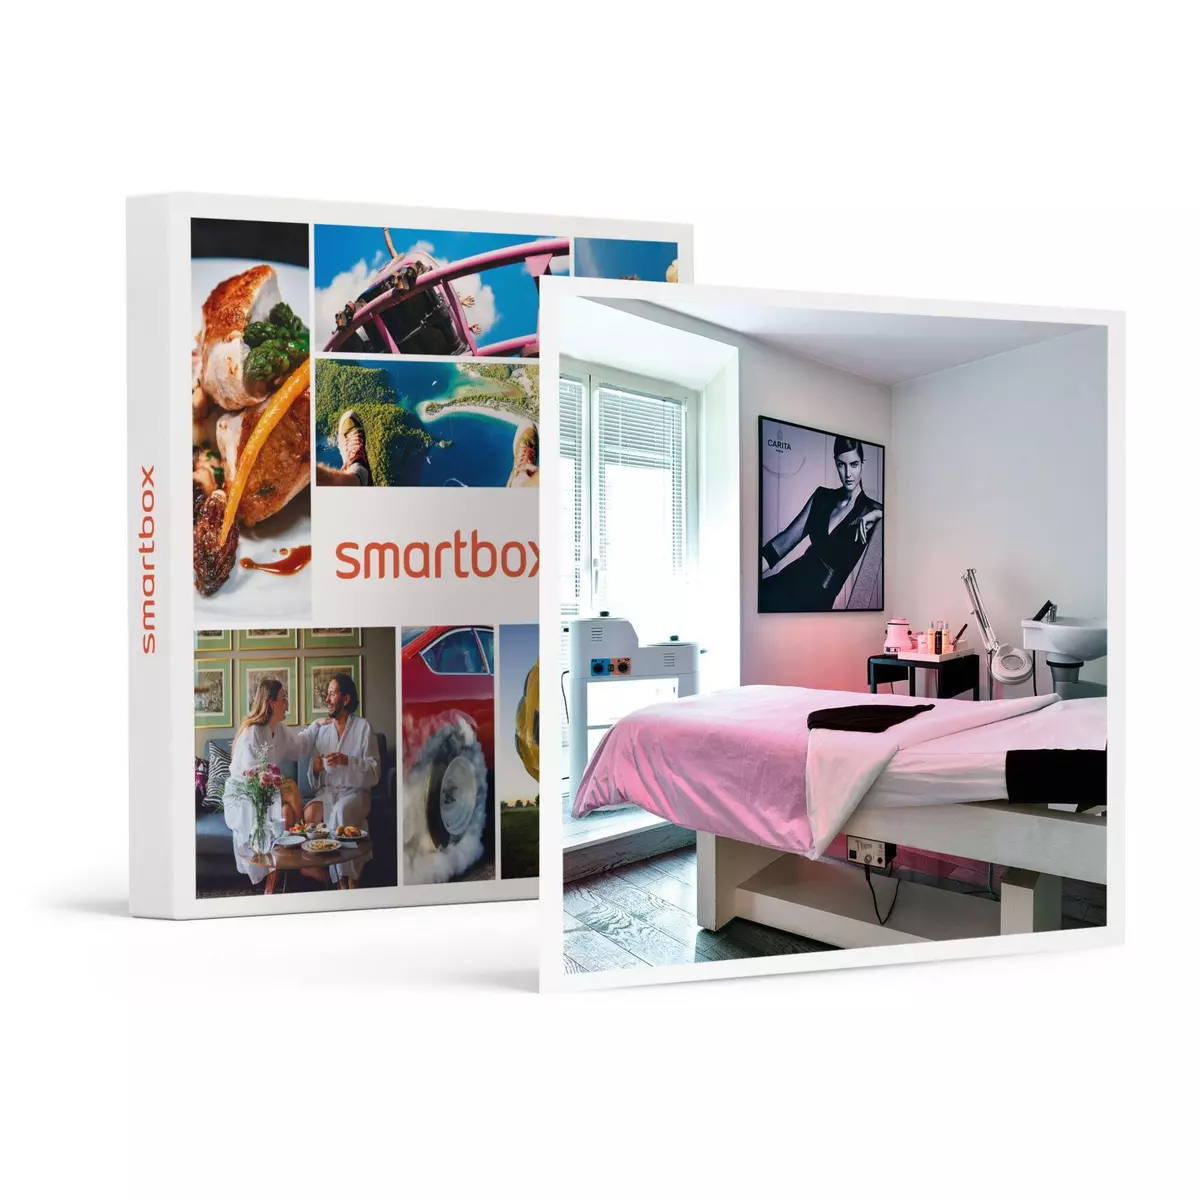 Smartbox 2h de soins sur-mesure en institut au cœur de Nice - Coffret Cadeau Bien-être